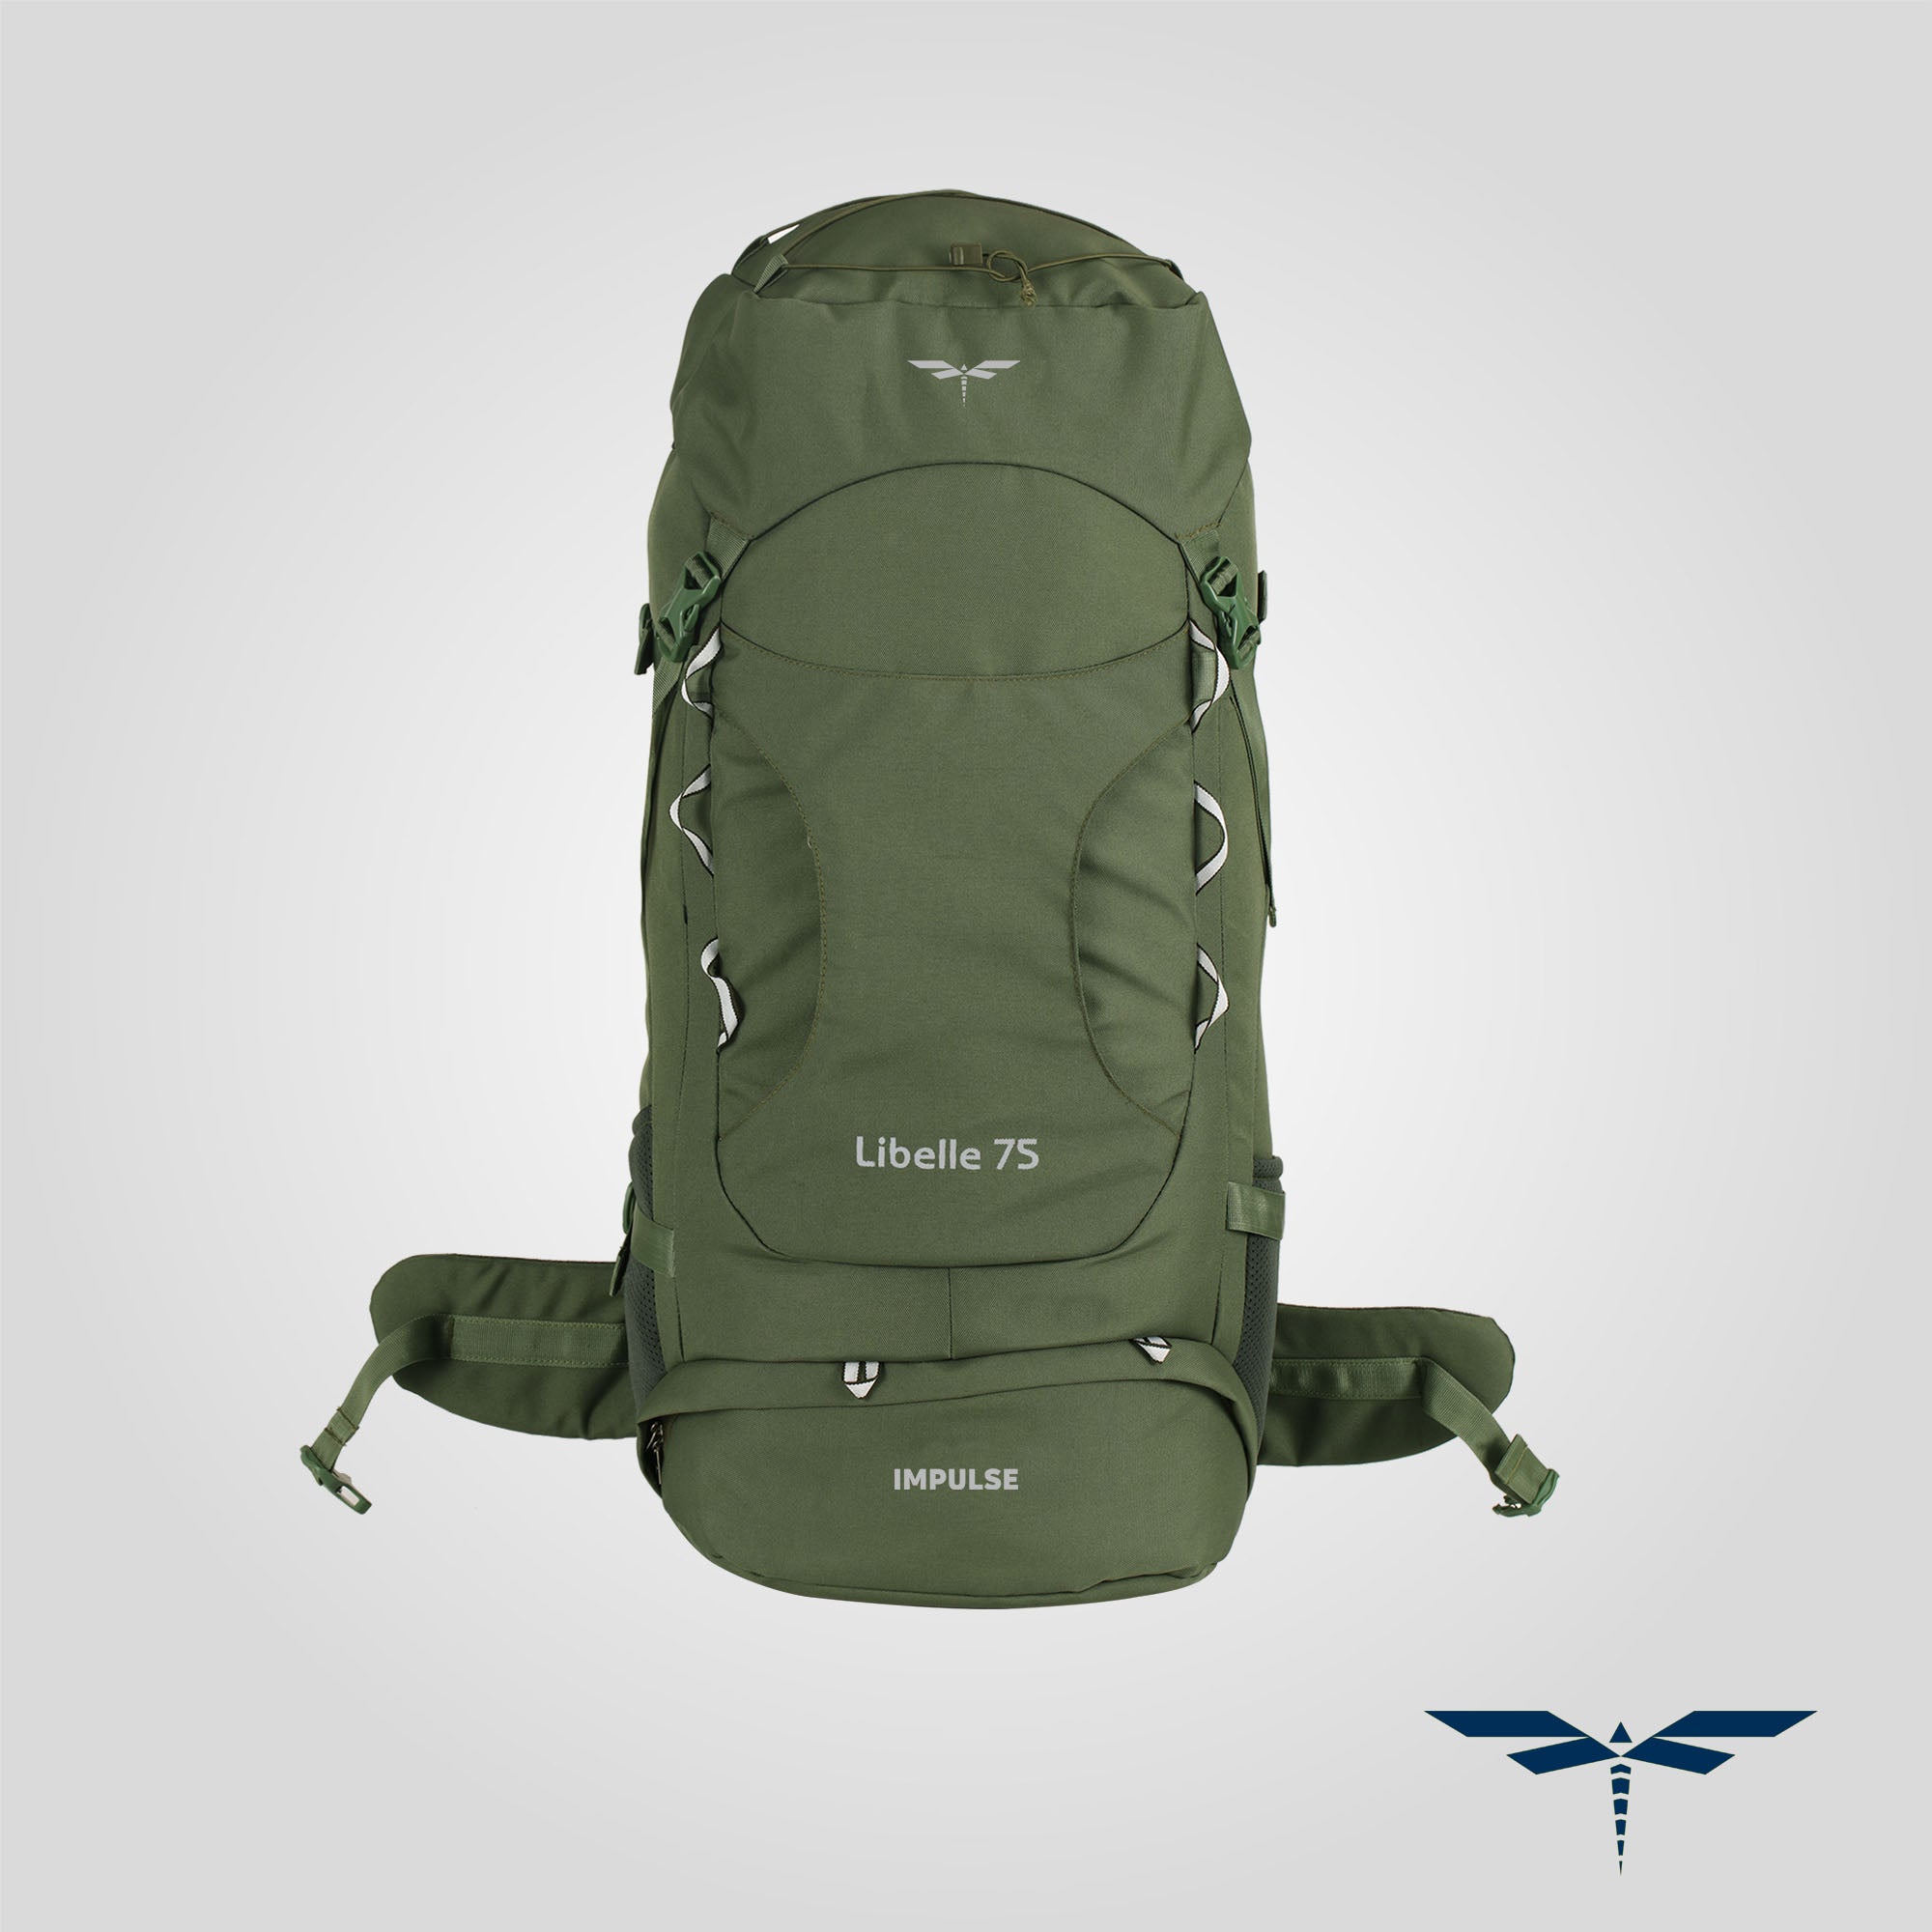 IMPULSE Travel bag for Unisex tourist bag backpack for hiking trekking  camping Rucksack - 75 L Grey, Black - Price in India | Flipkart.com